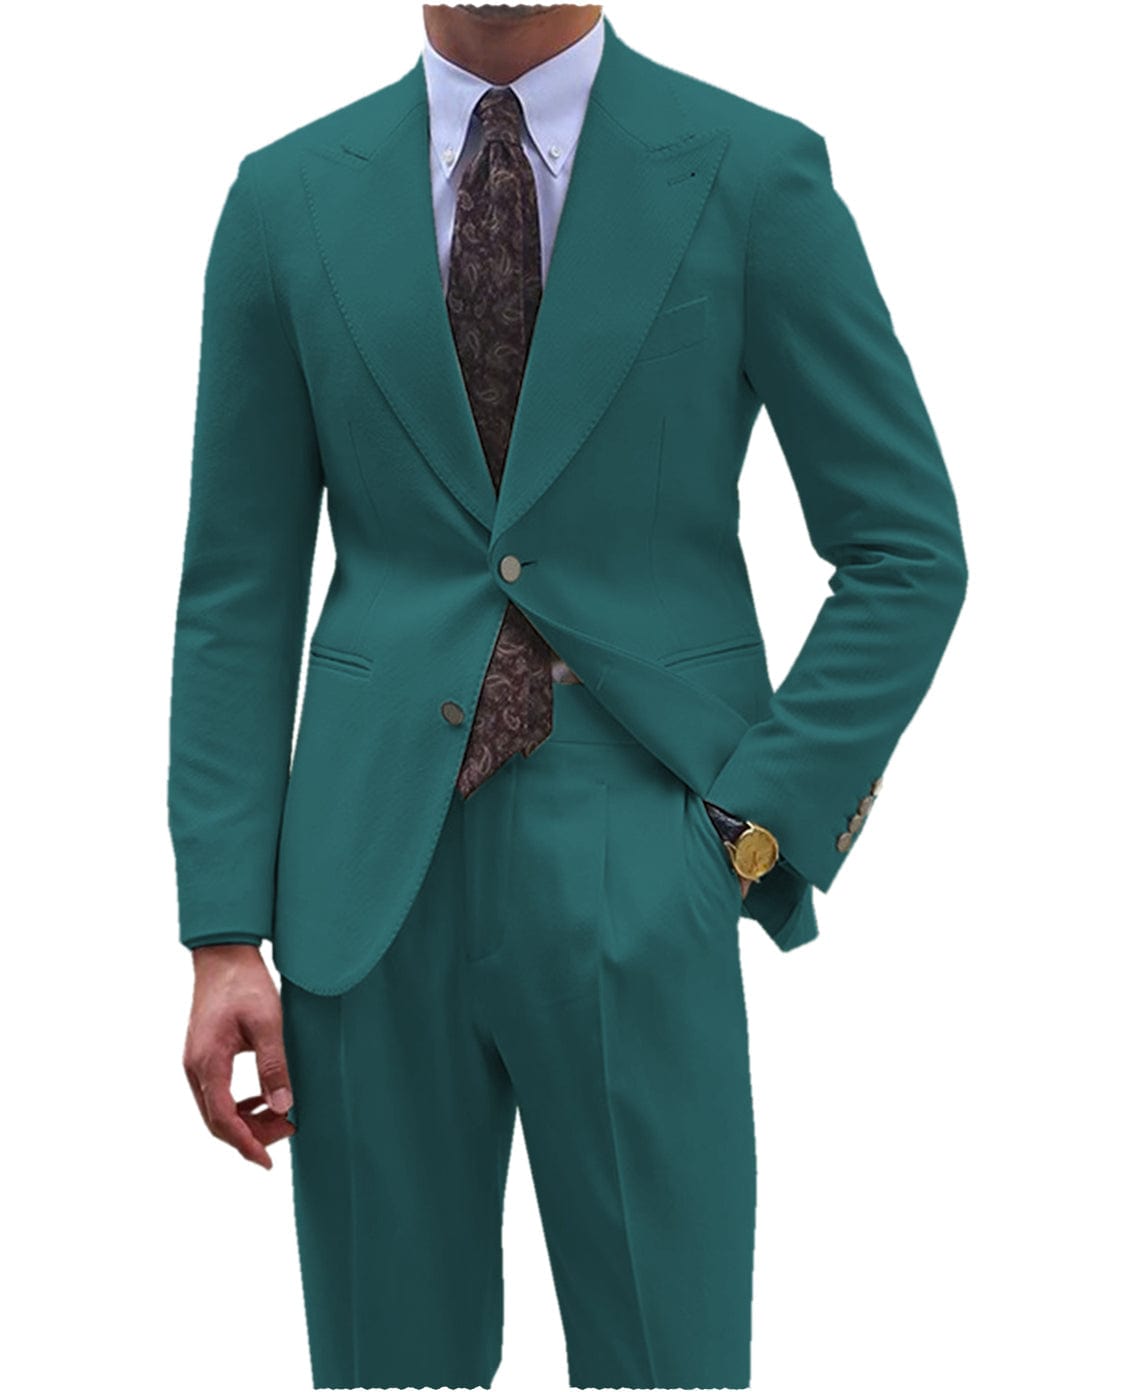 aesido Men's Suit 2 Pieces Double Buttons Peak Lapel Jacket （Blazer+Pants）